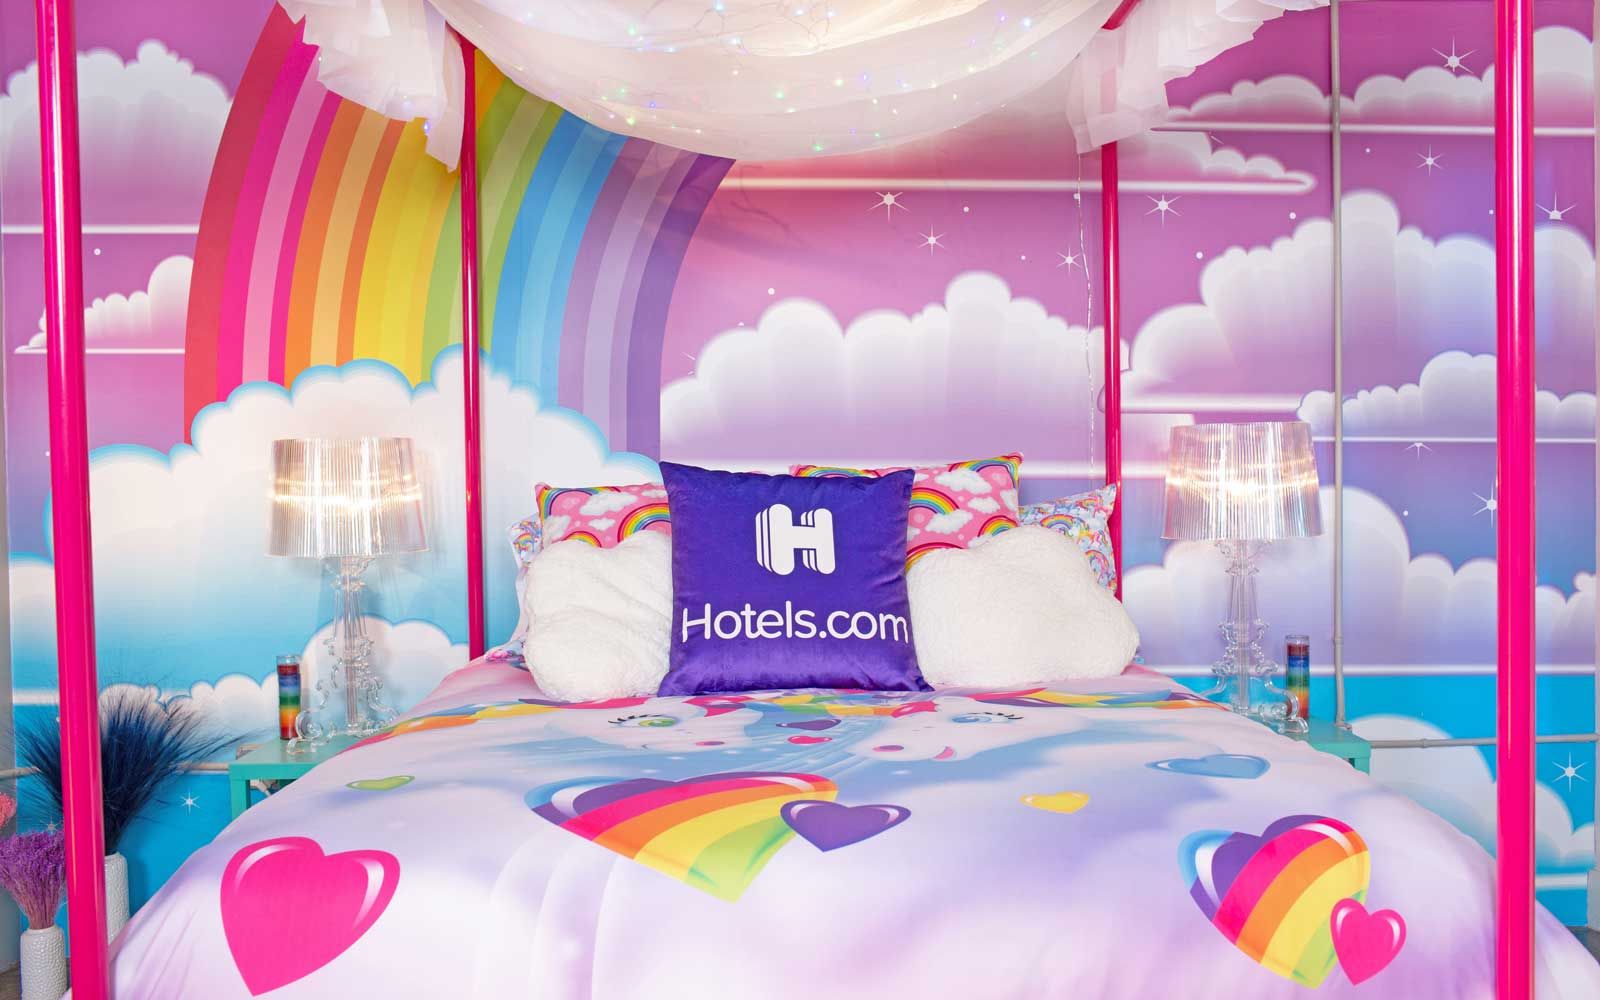 Lisa Frank x Hotels.com